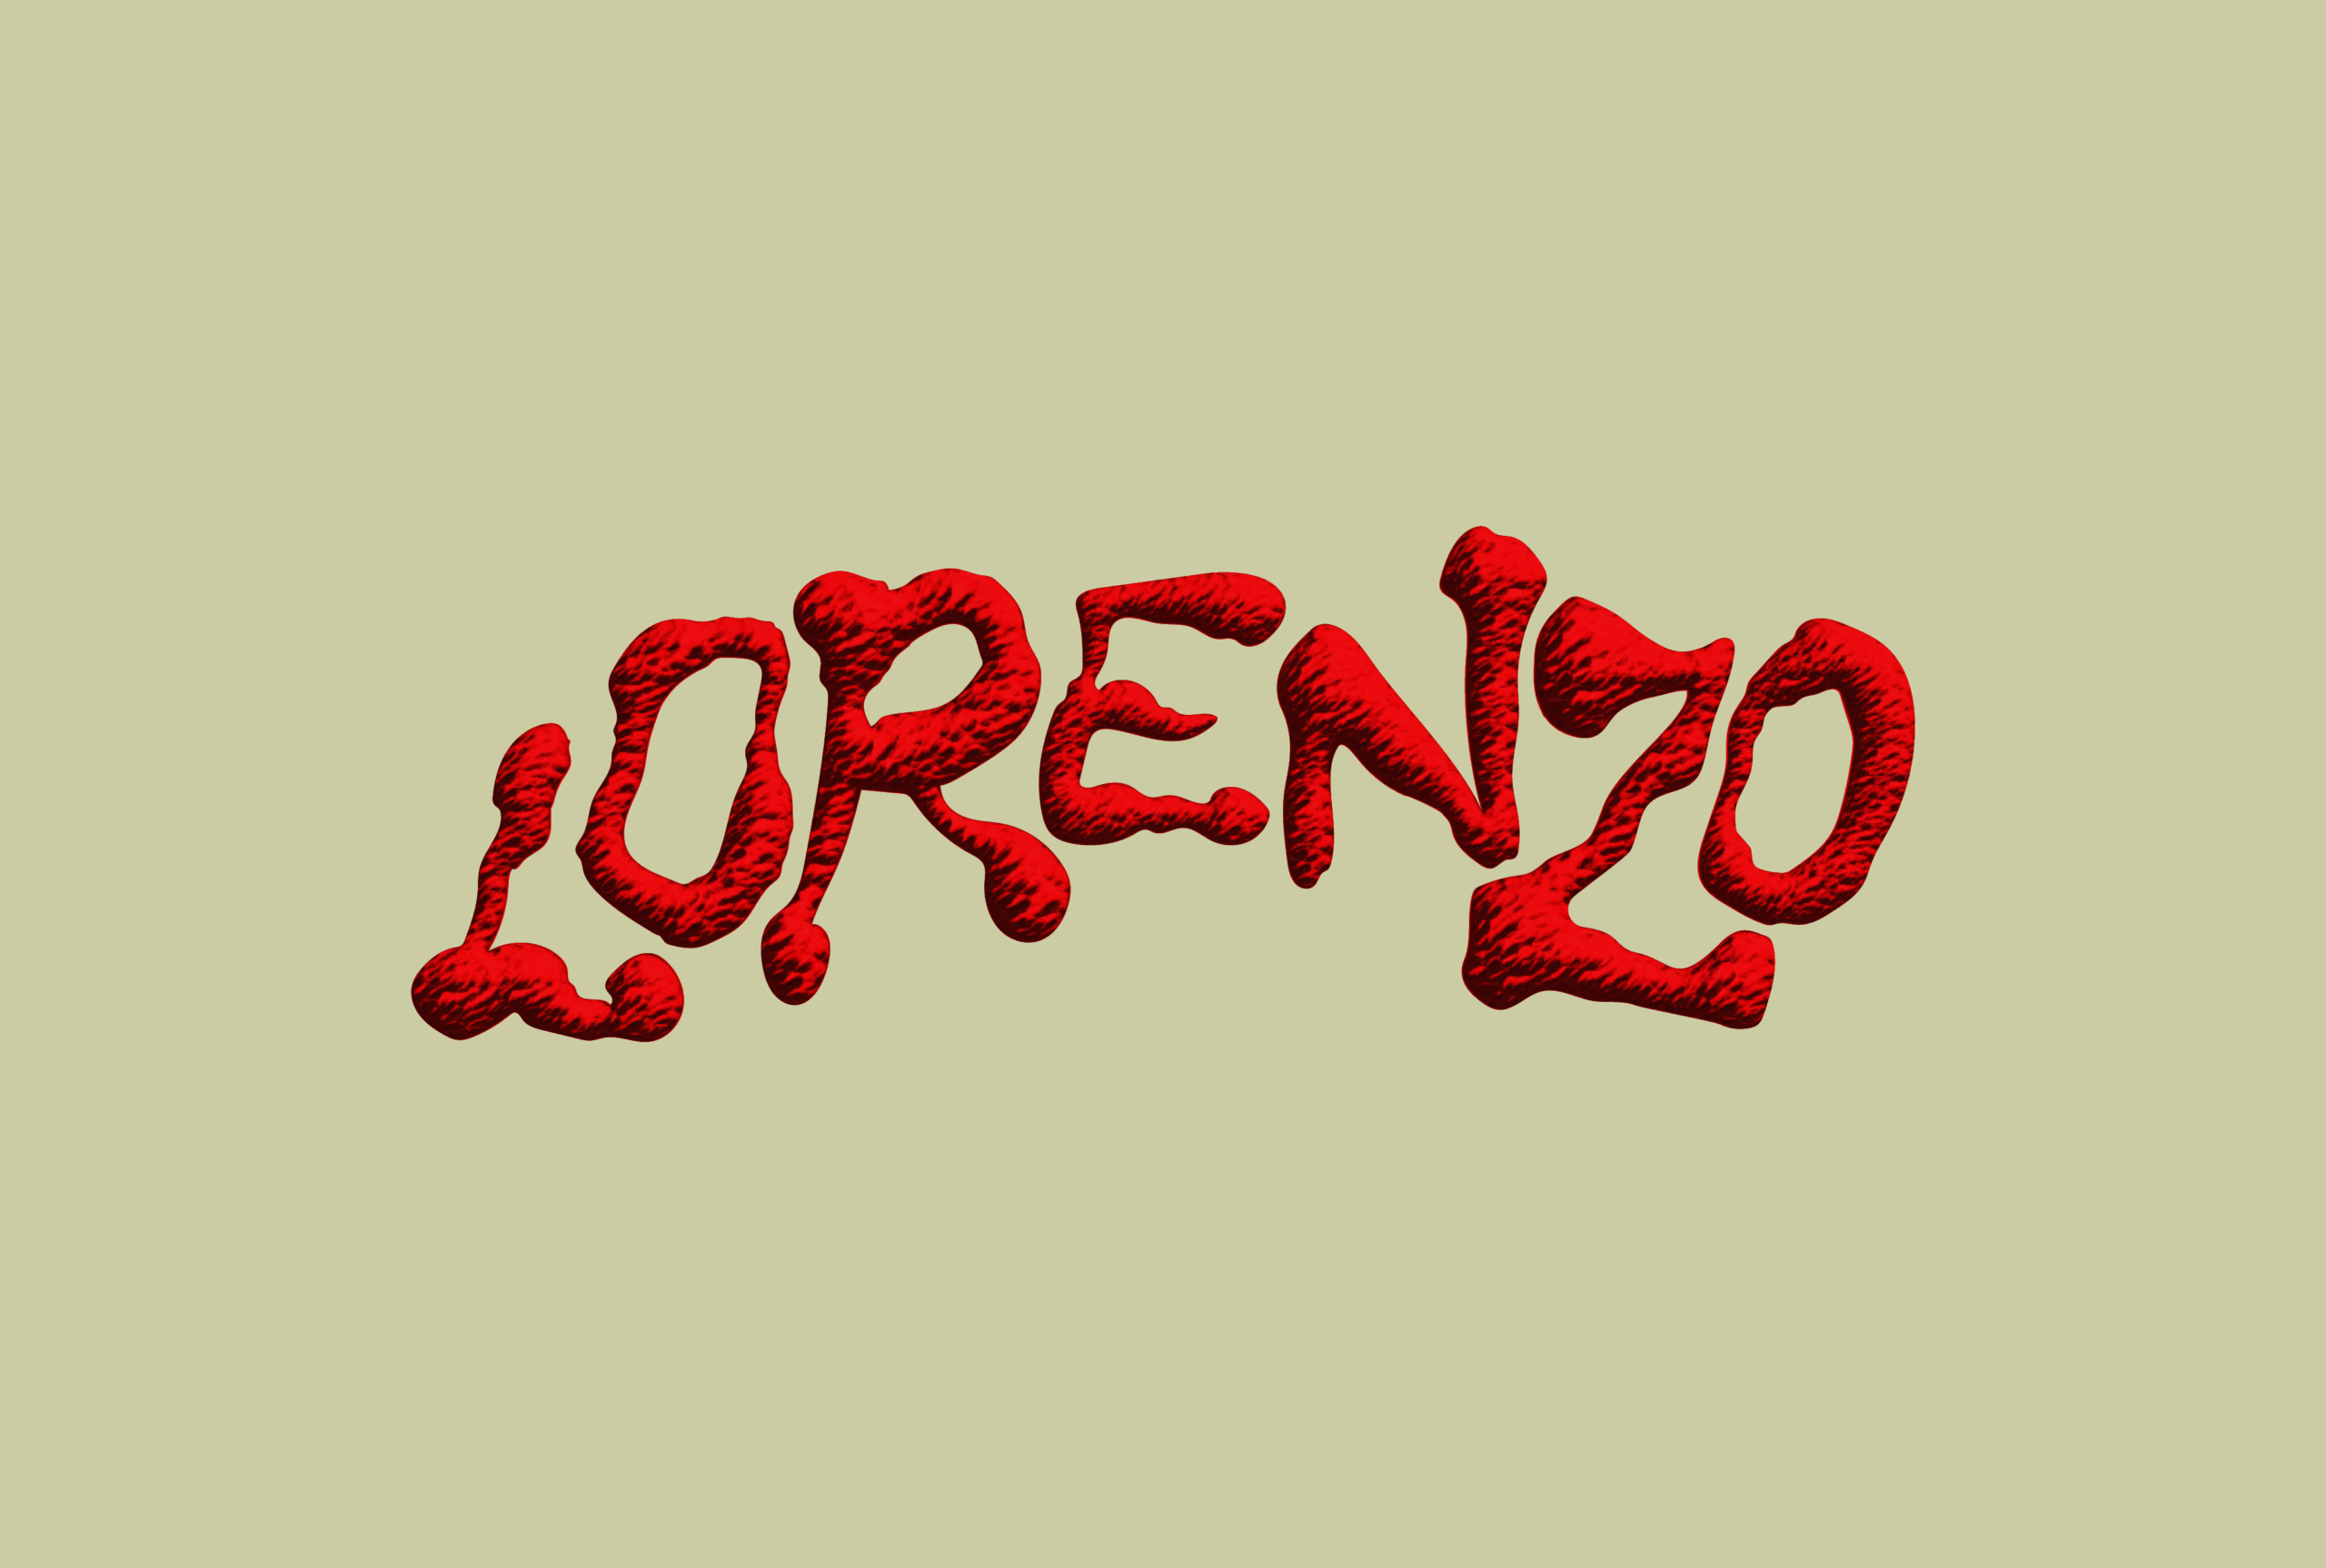 Lorenzo — Coming soon